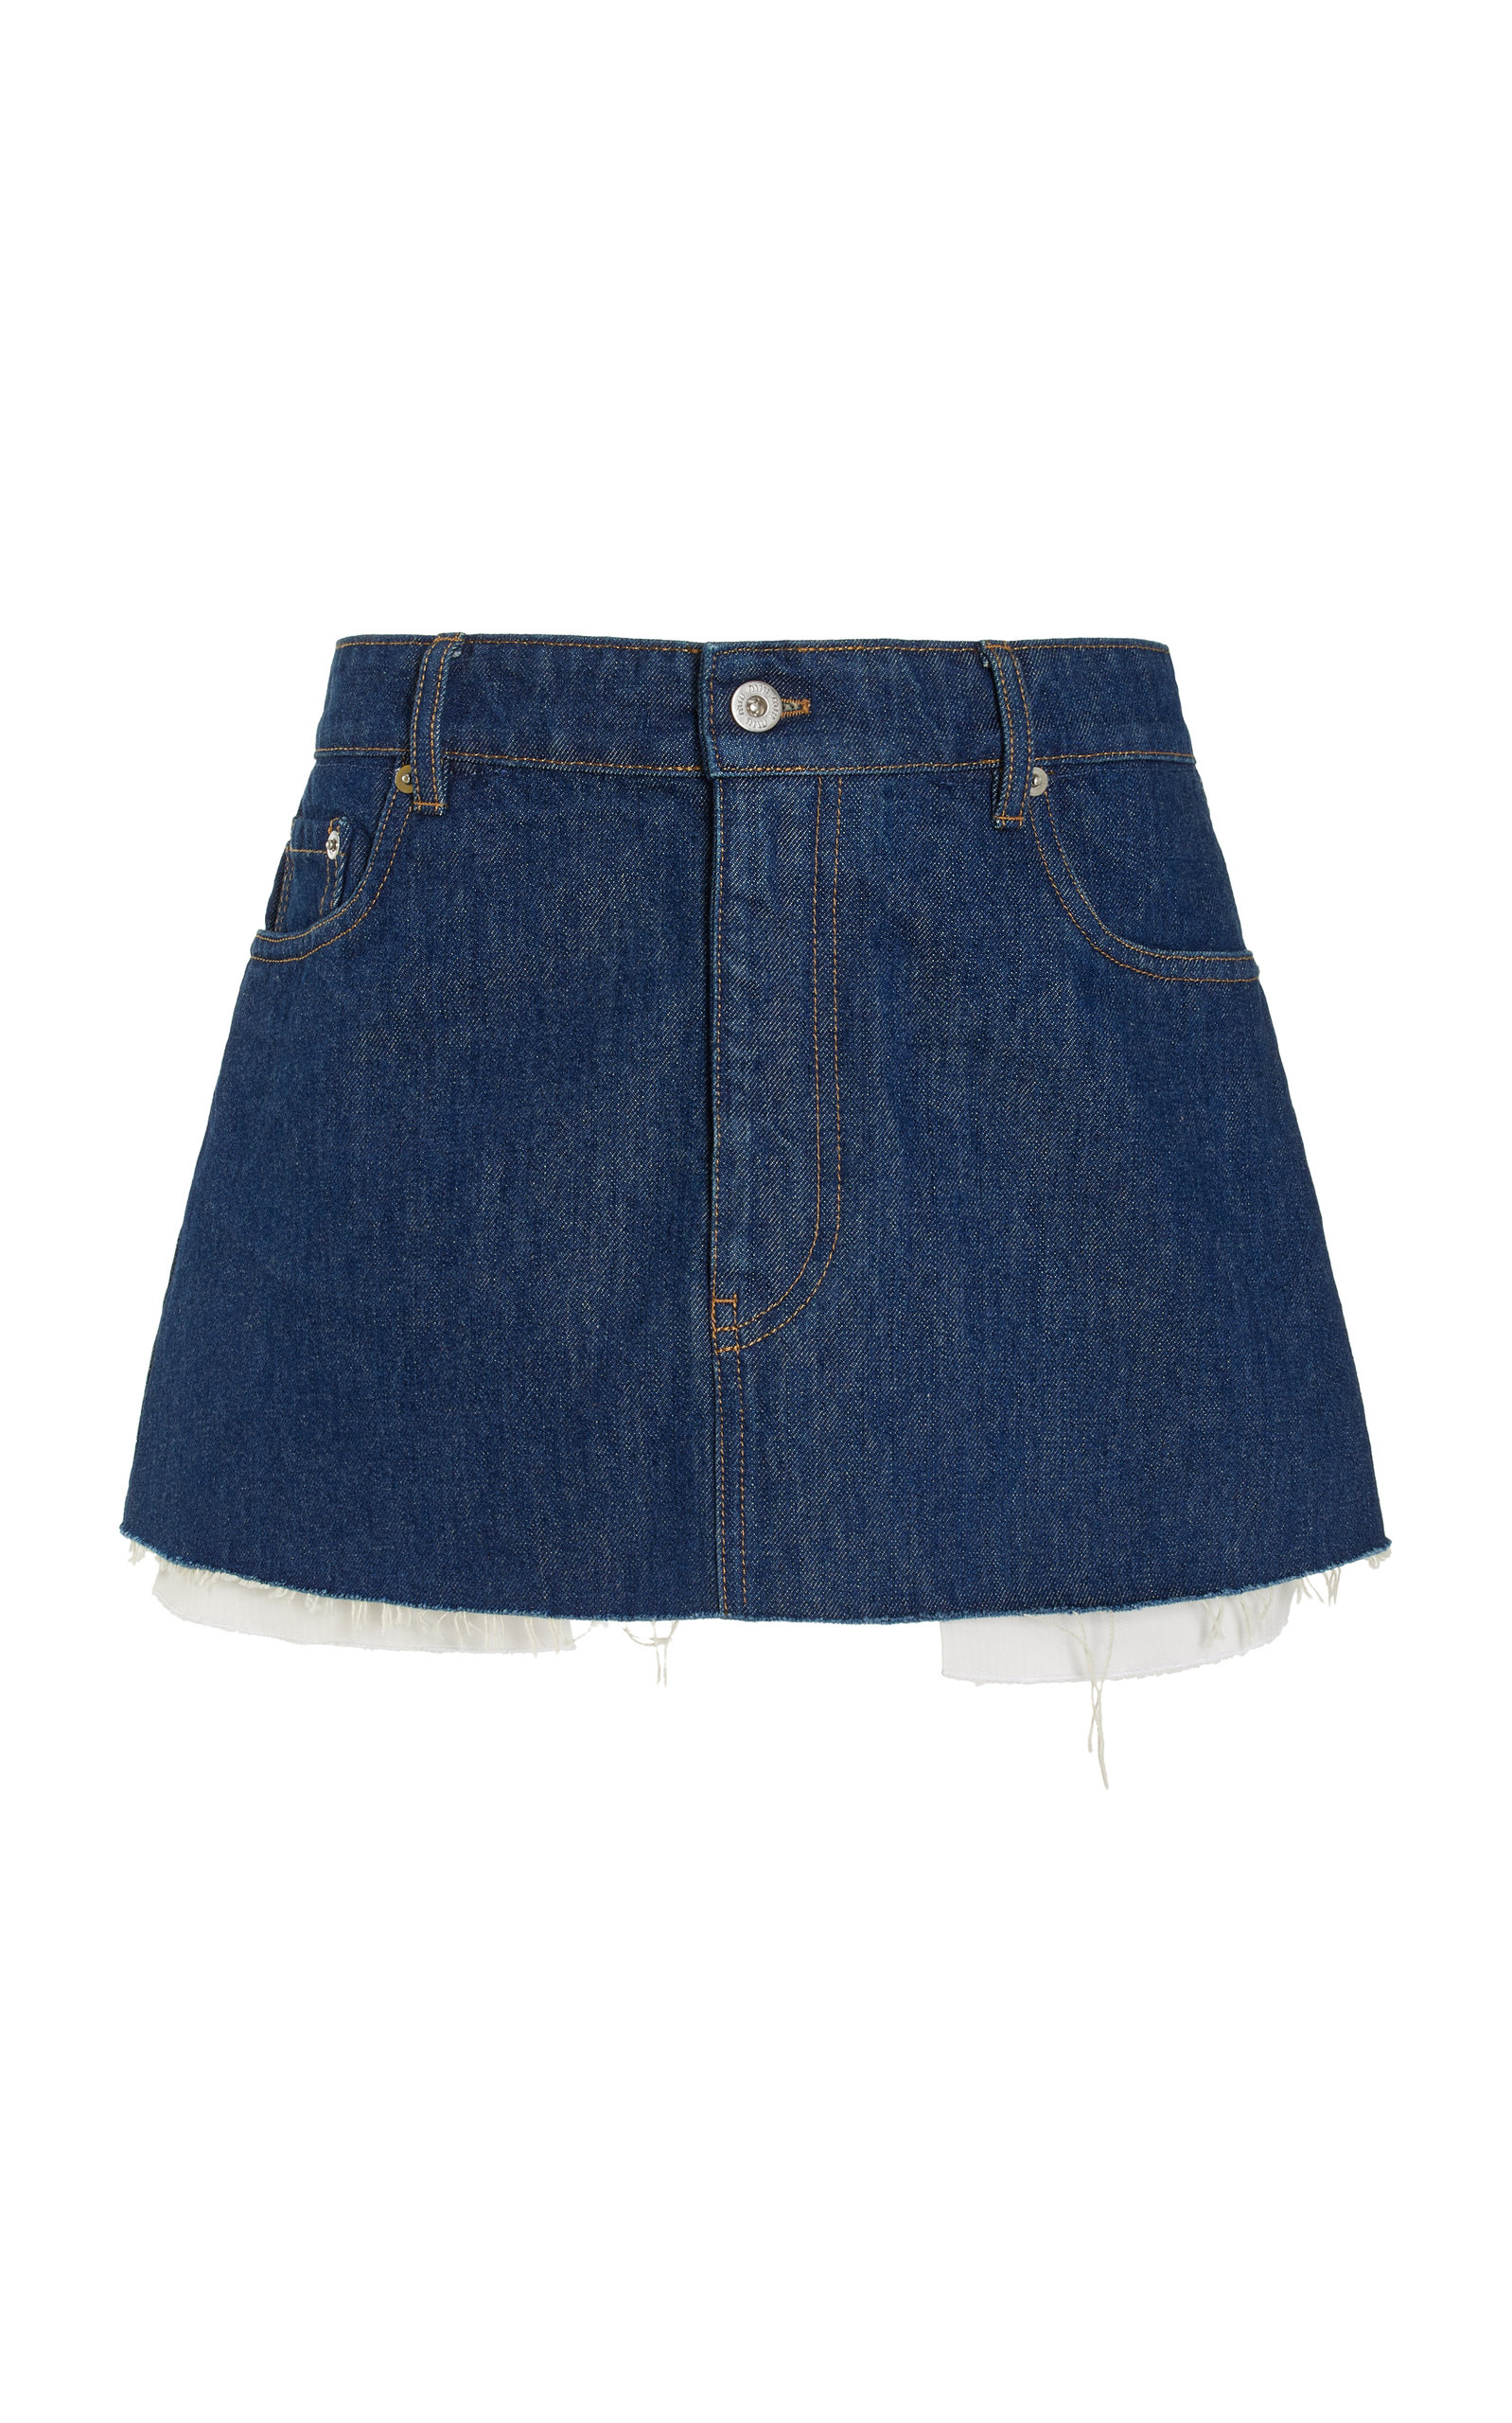 Miu Miu - Women's Raw-Edge Denim Mini Skirt - Medium Wash - IT 38 - Moda Operandi